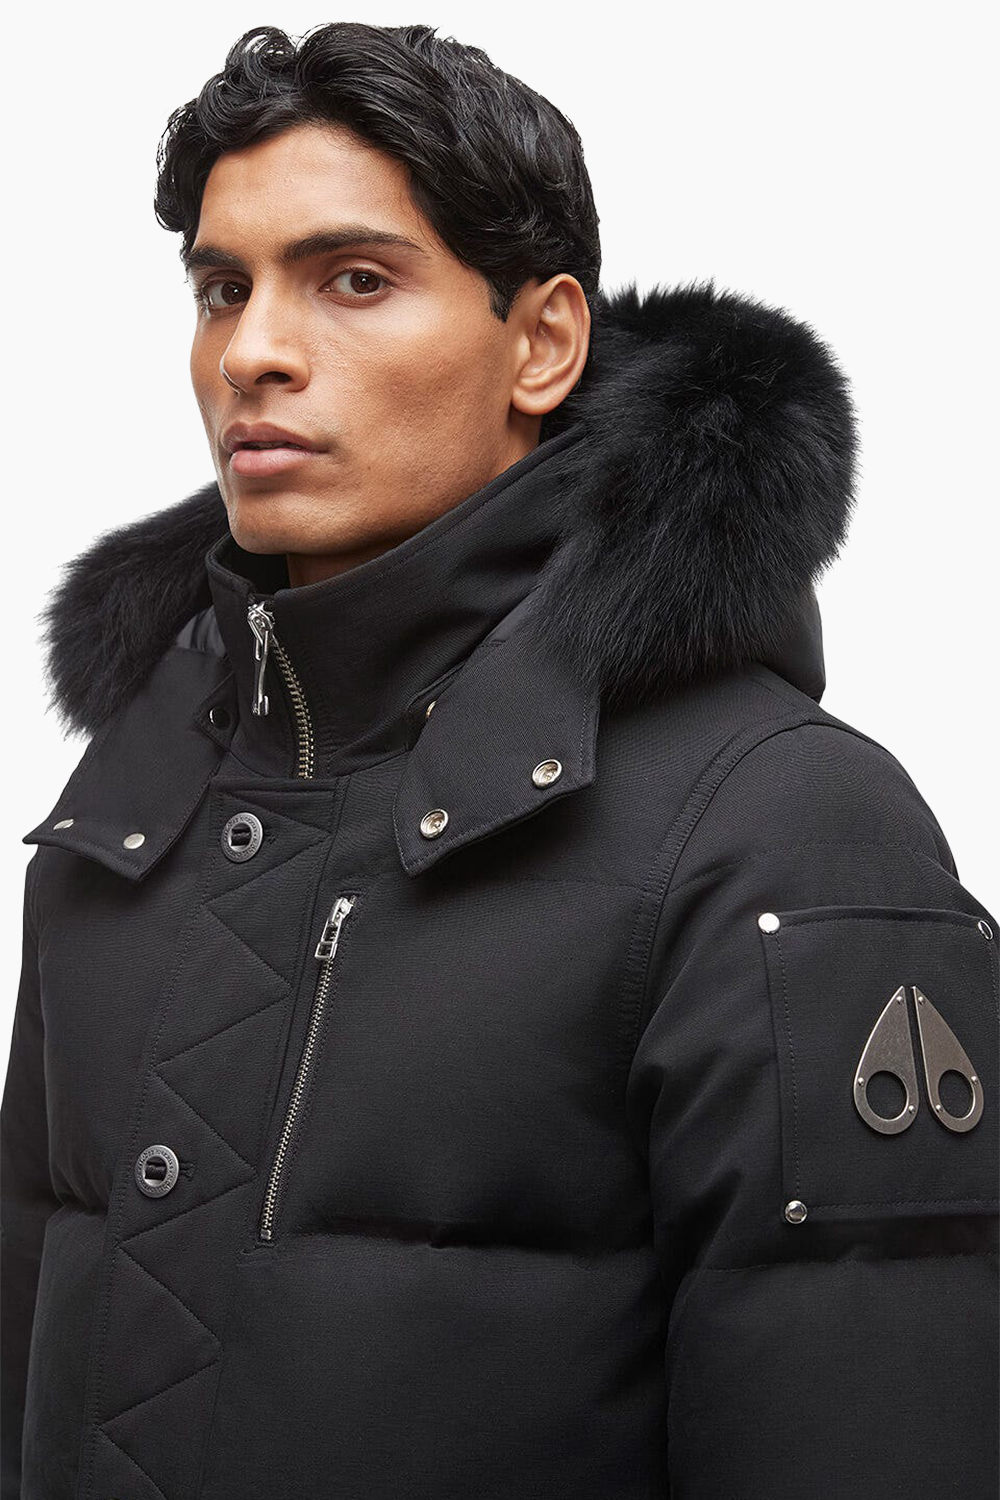 Moose Knuckles Men's 3Q Jacket in Black with Black Fur